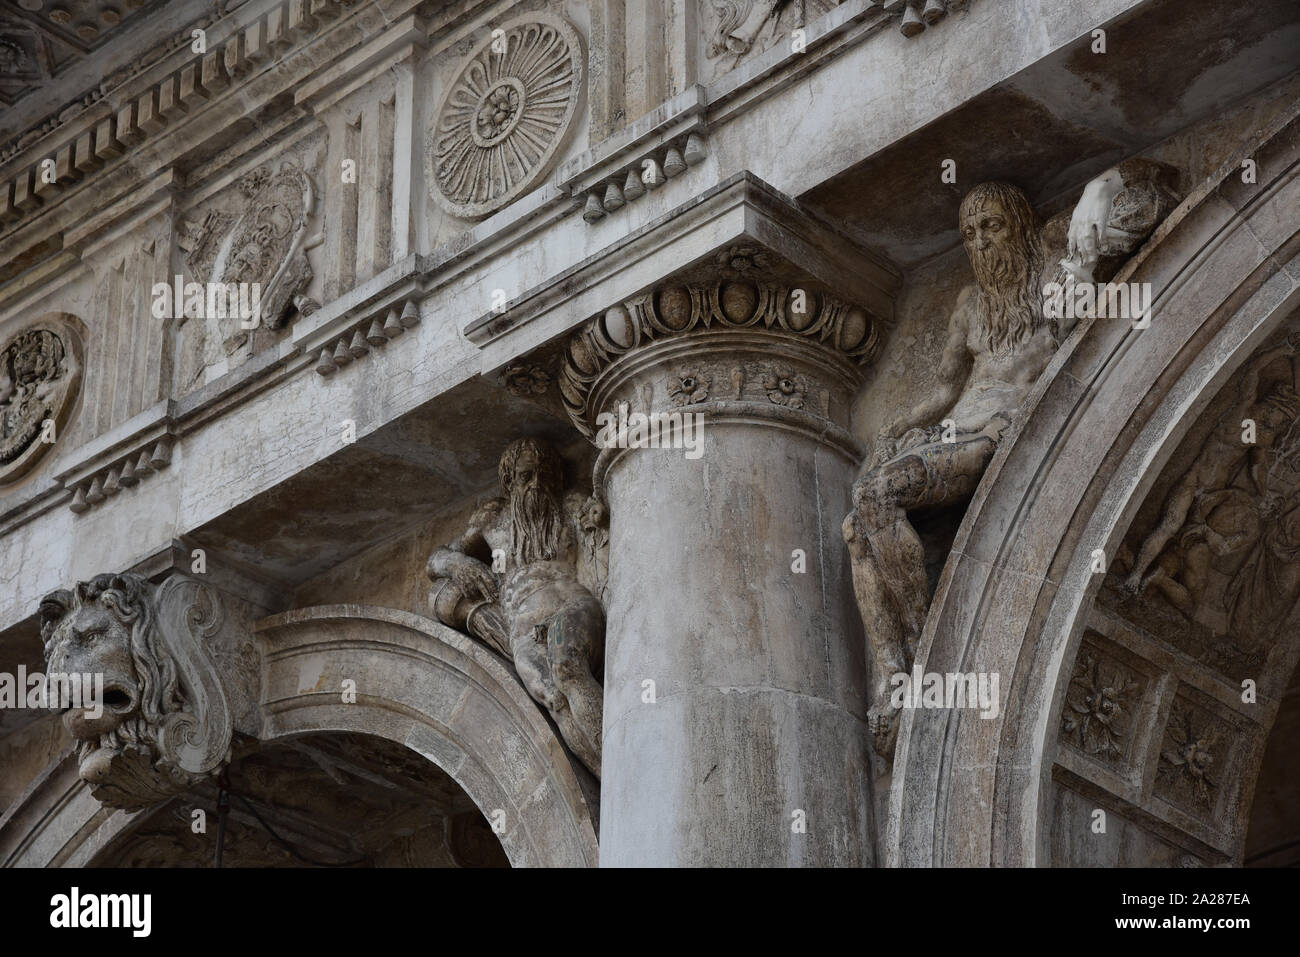 Détail architectural de sculptures au-dessus de la Libreria Sansoviniana de voûtes, construit entre 1537 et 1588, Piazza San Marco, Venise, Italie. Banque D'Images